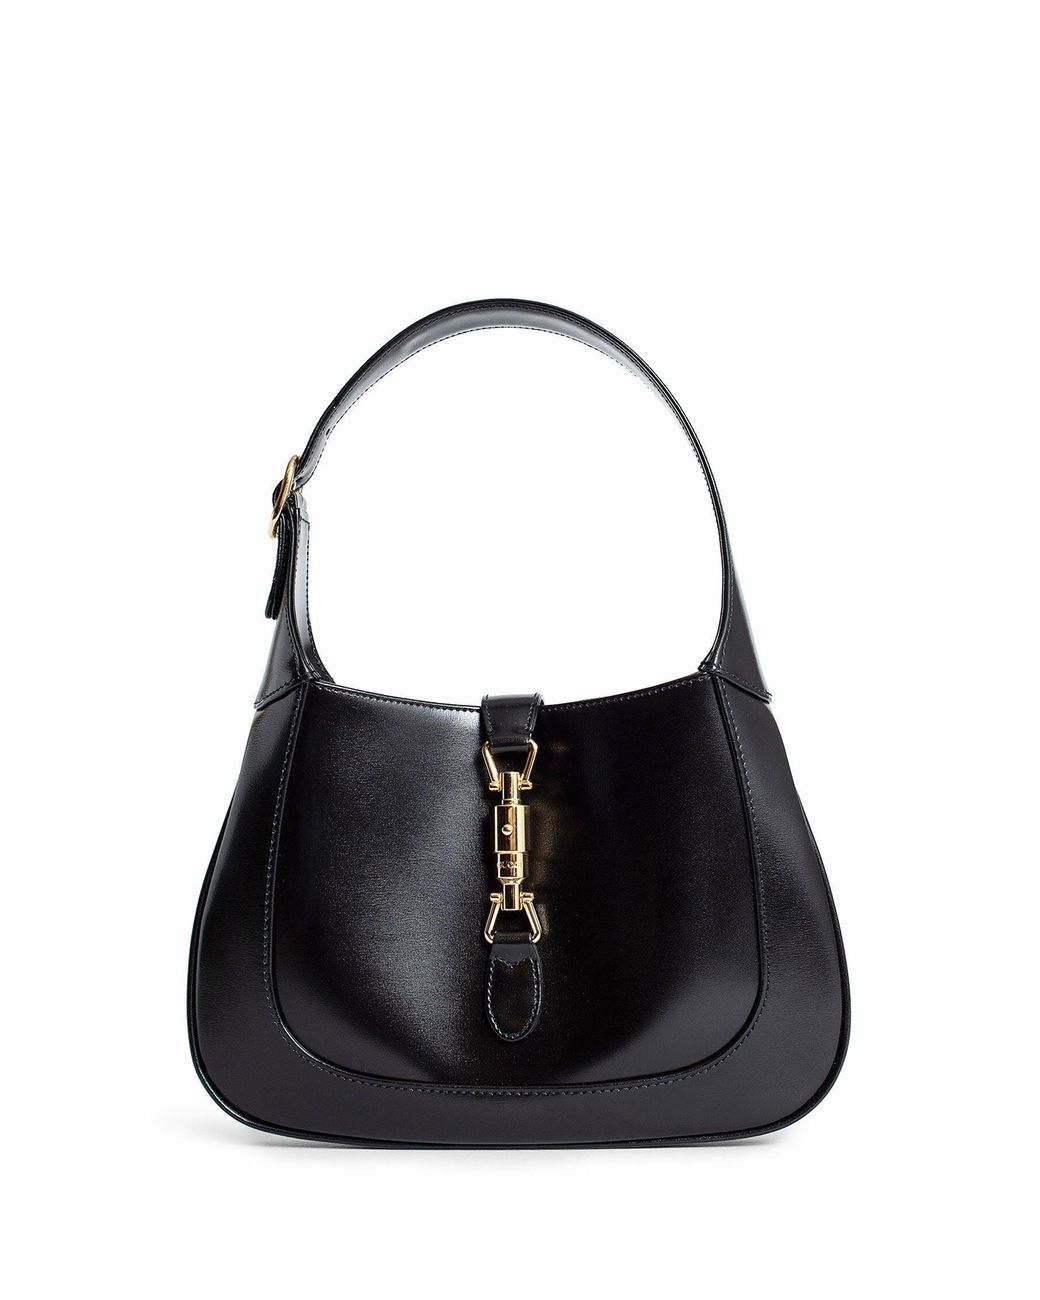 chanel cc trendy bag | Chanel bag, Bags, Fashion bags